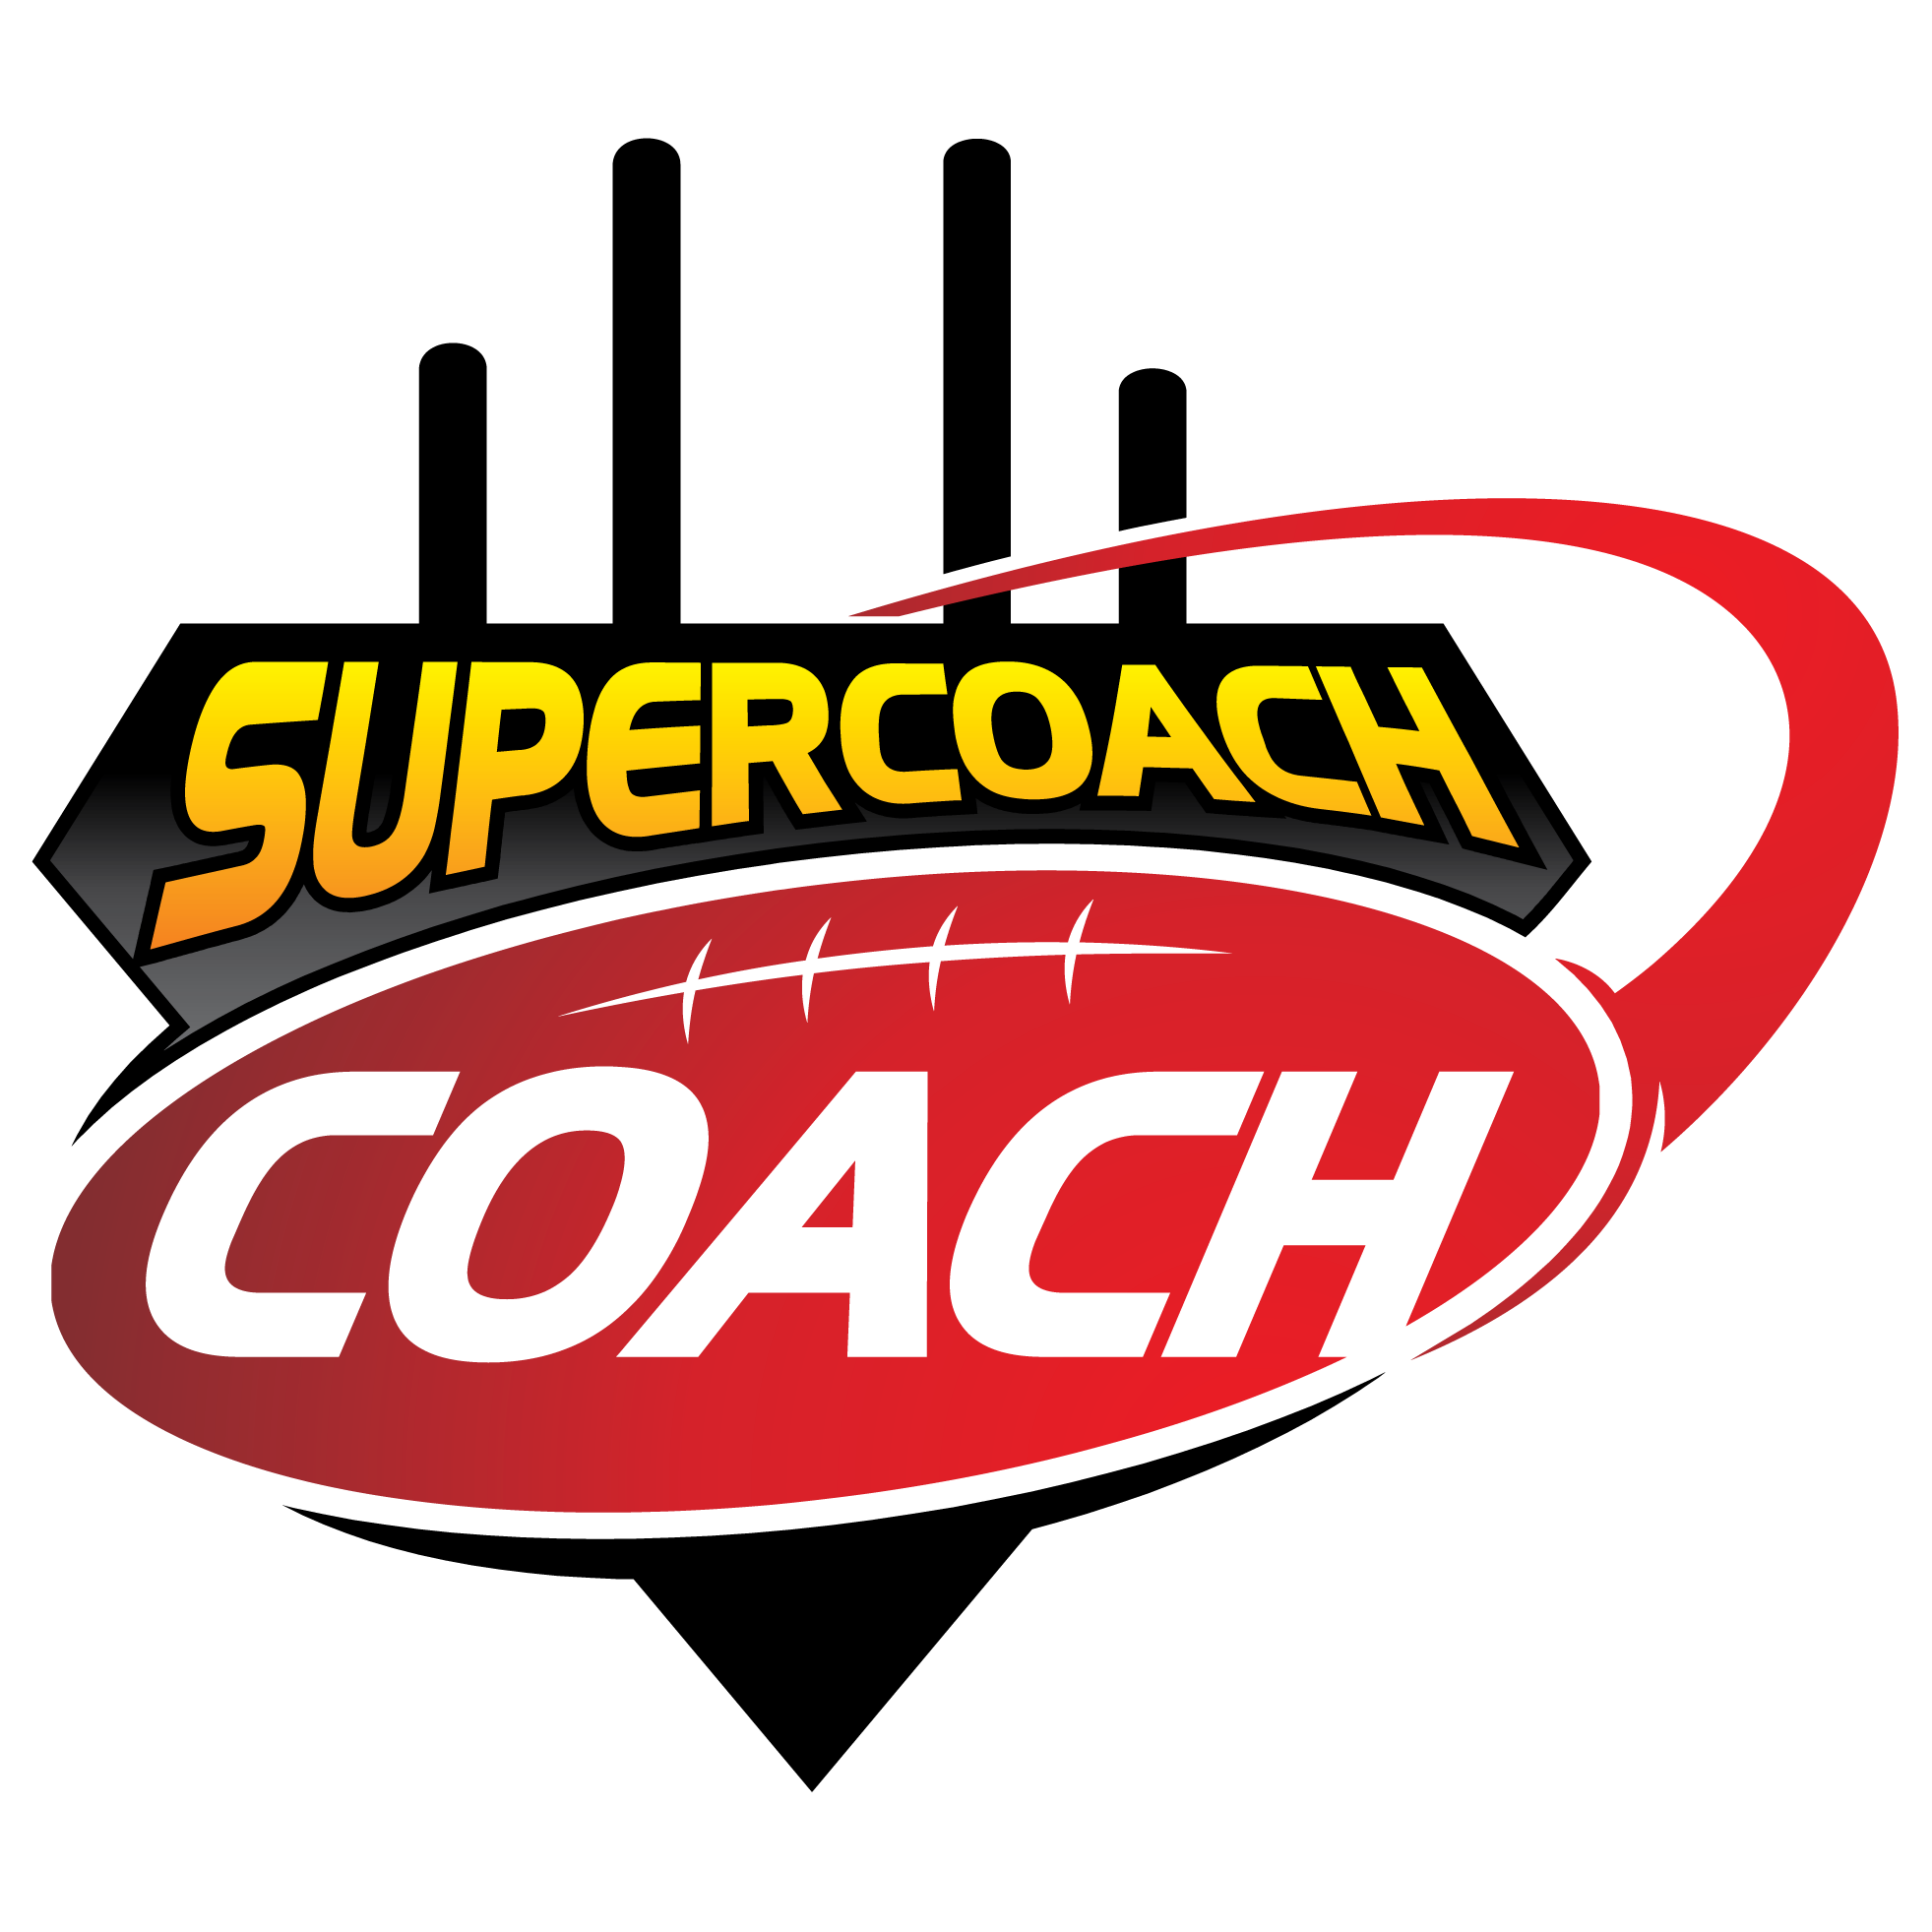 Supercoach_Coach.png